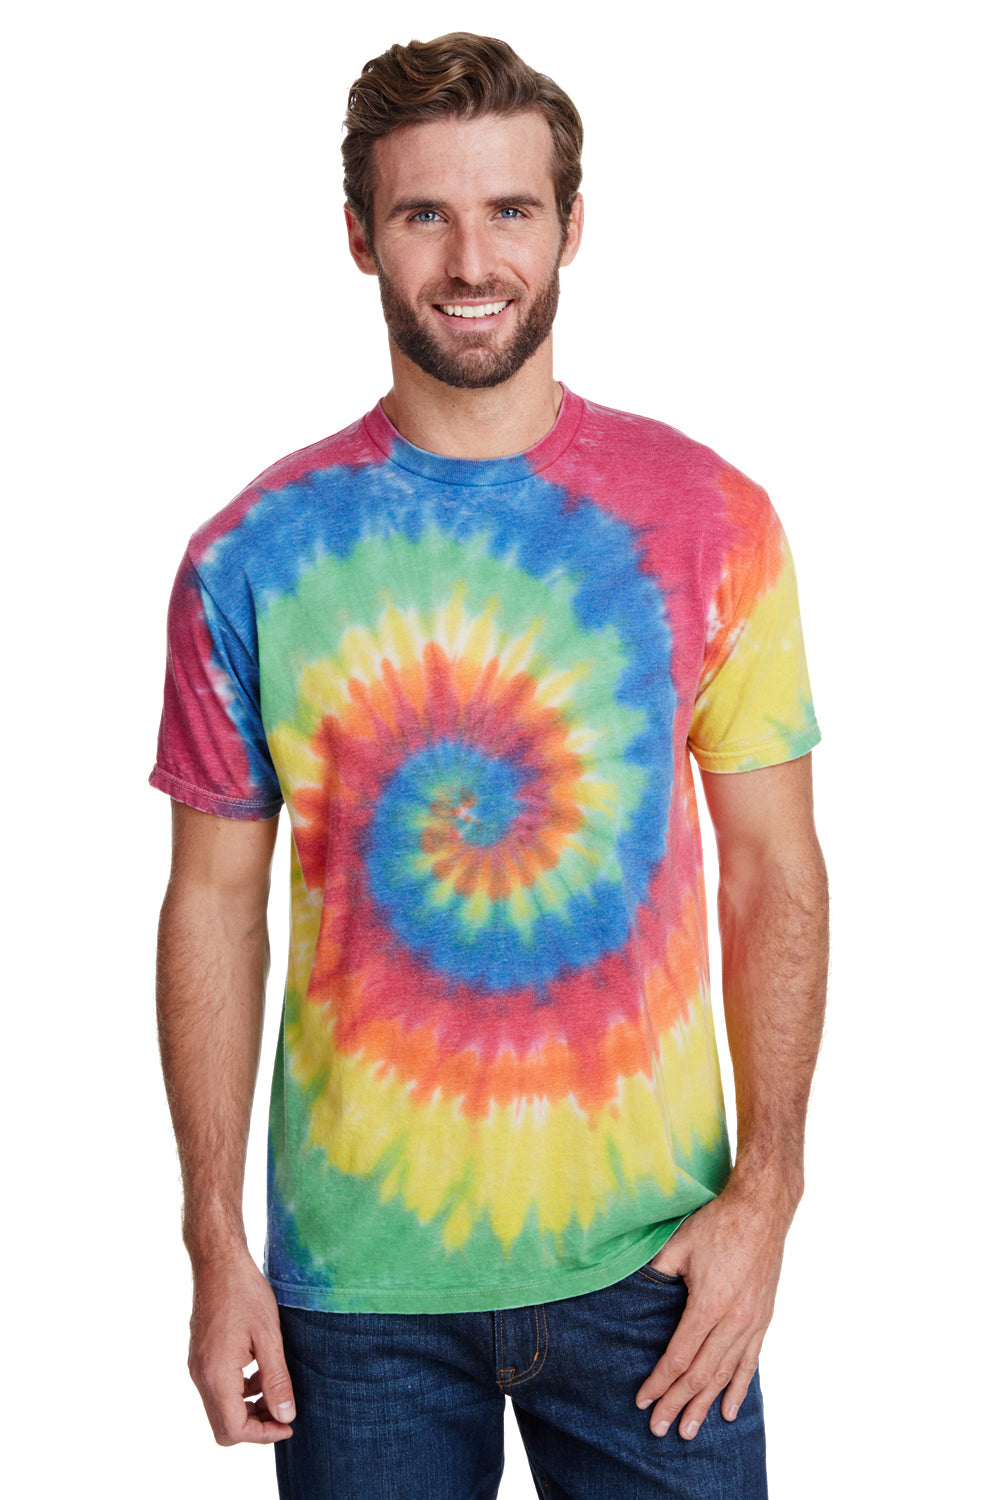 Tie-Dye CD1090 Mens Burnout Festival Short Sleeve Crewneck T-Shirt Rainbow Front